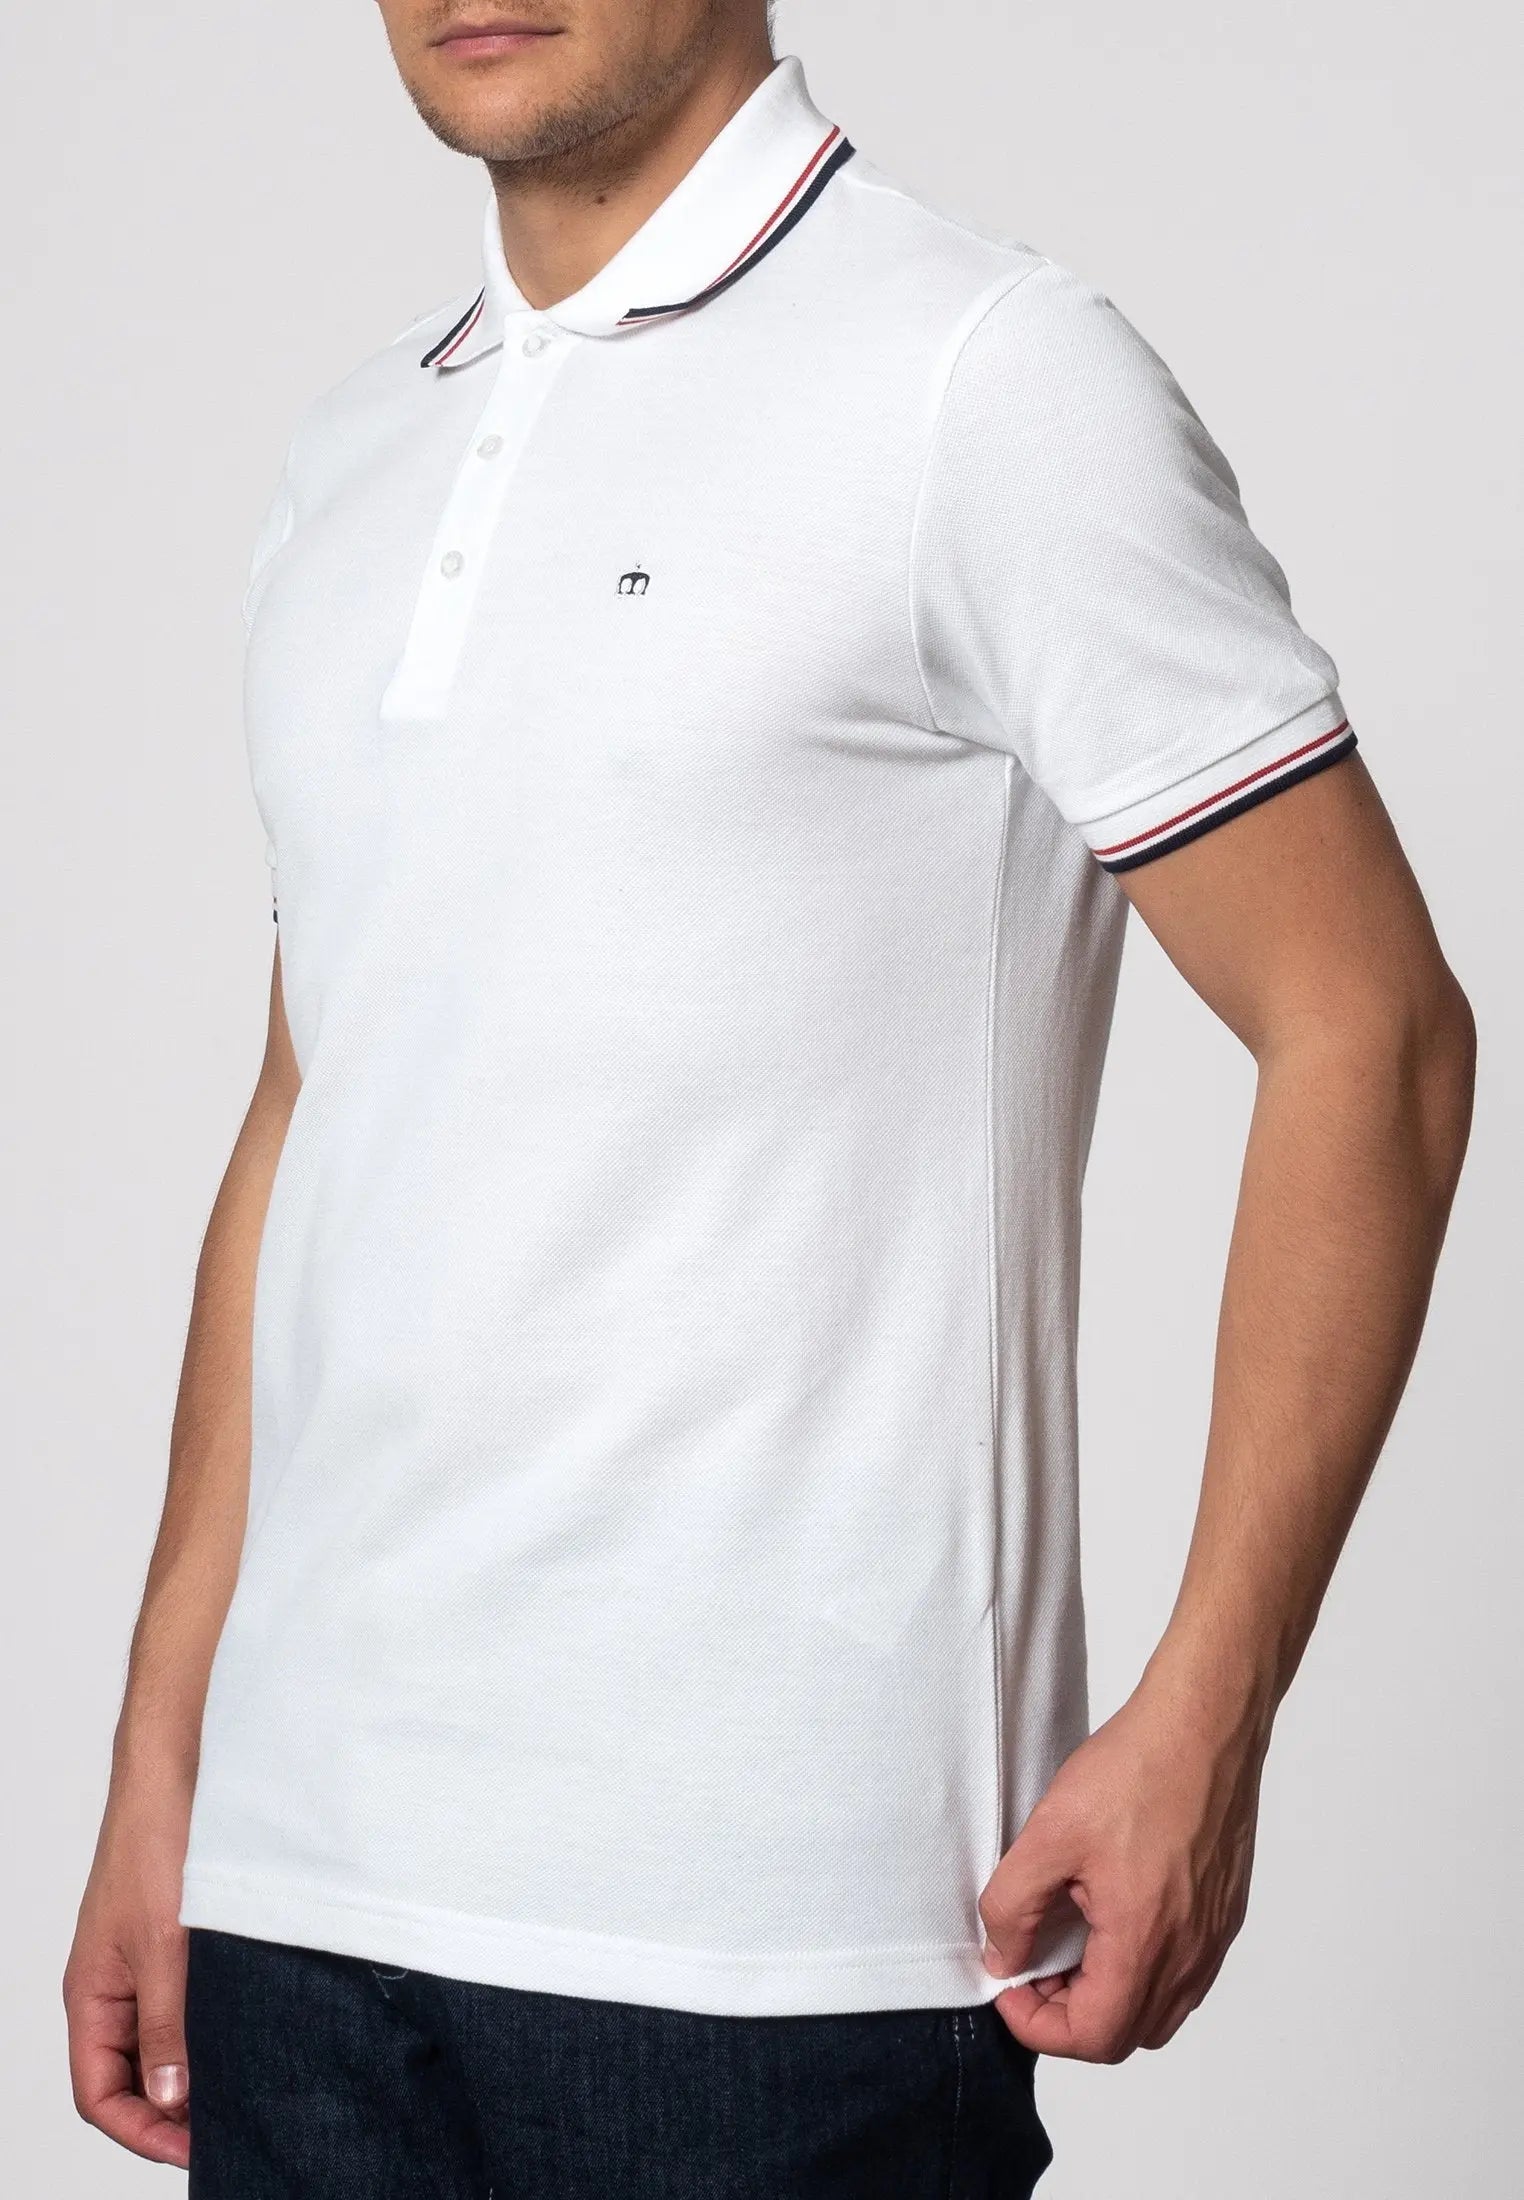 Merc London Card Polo Shirt - White From Woven Durham